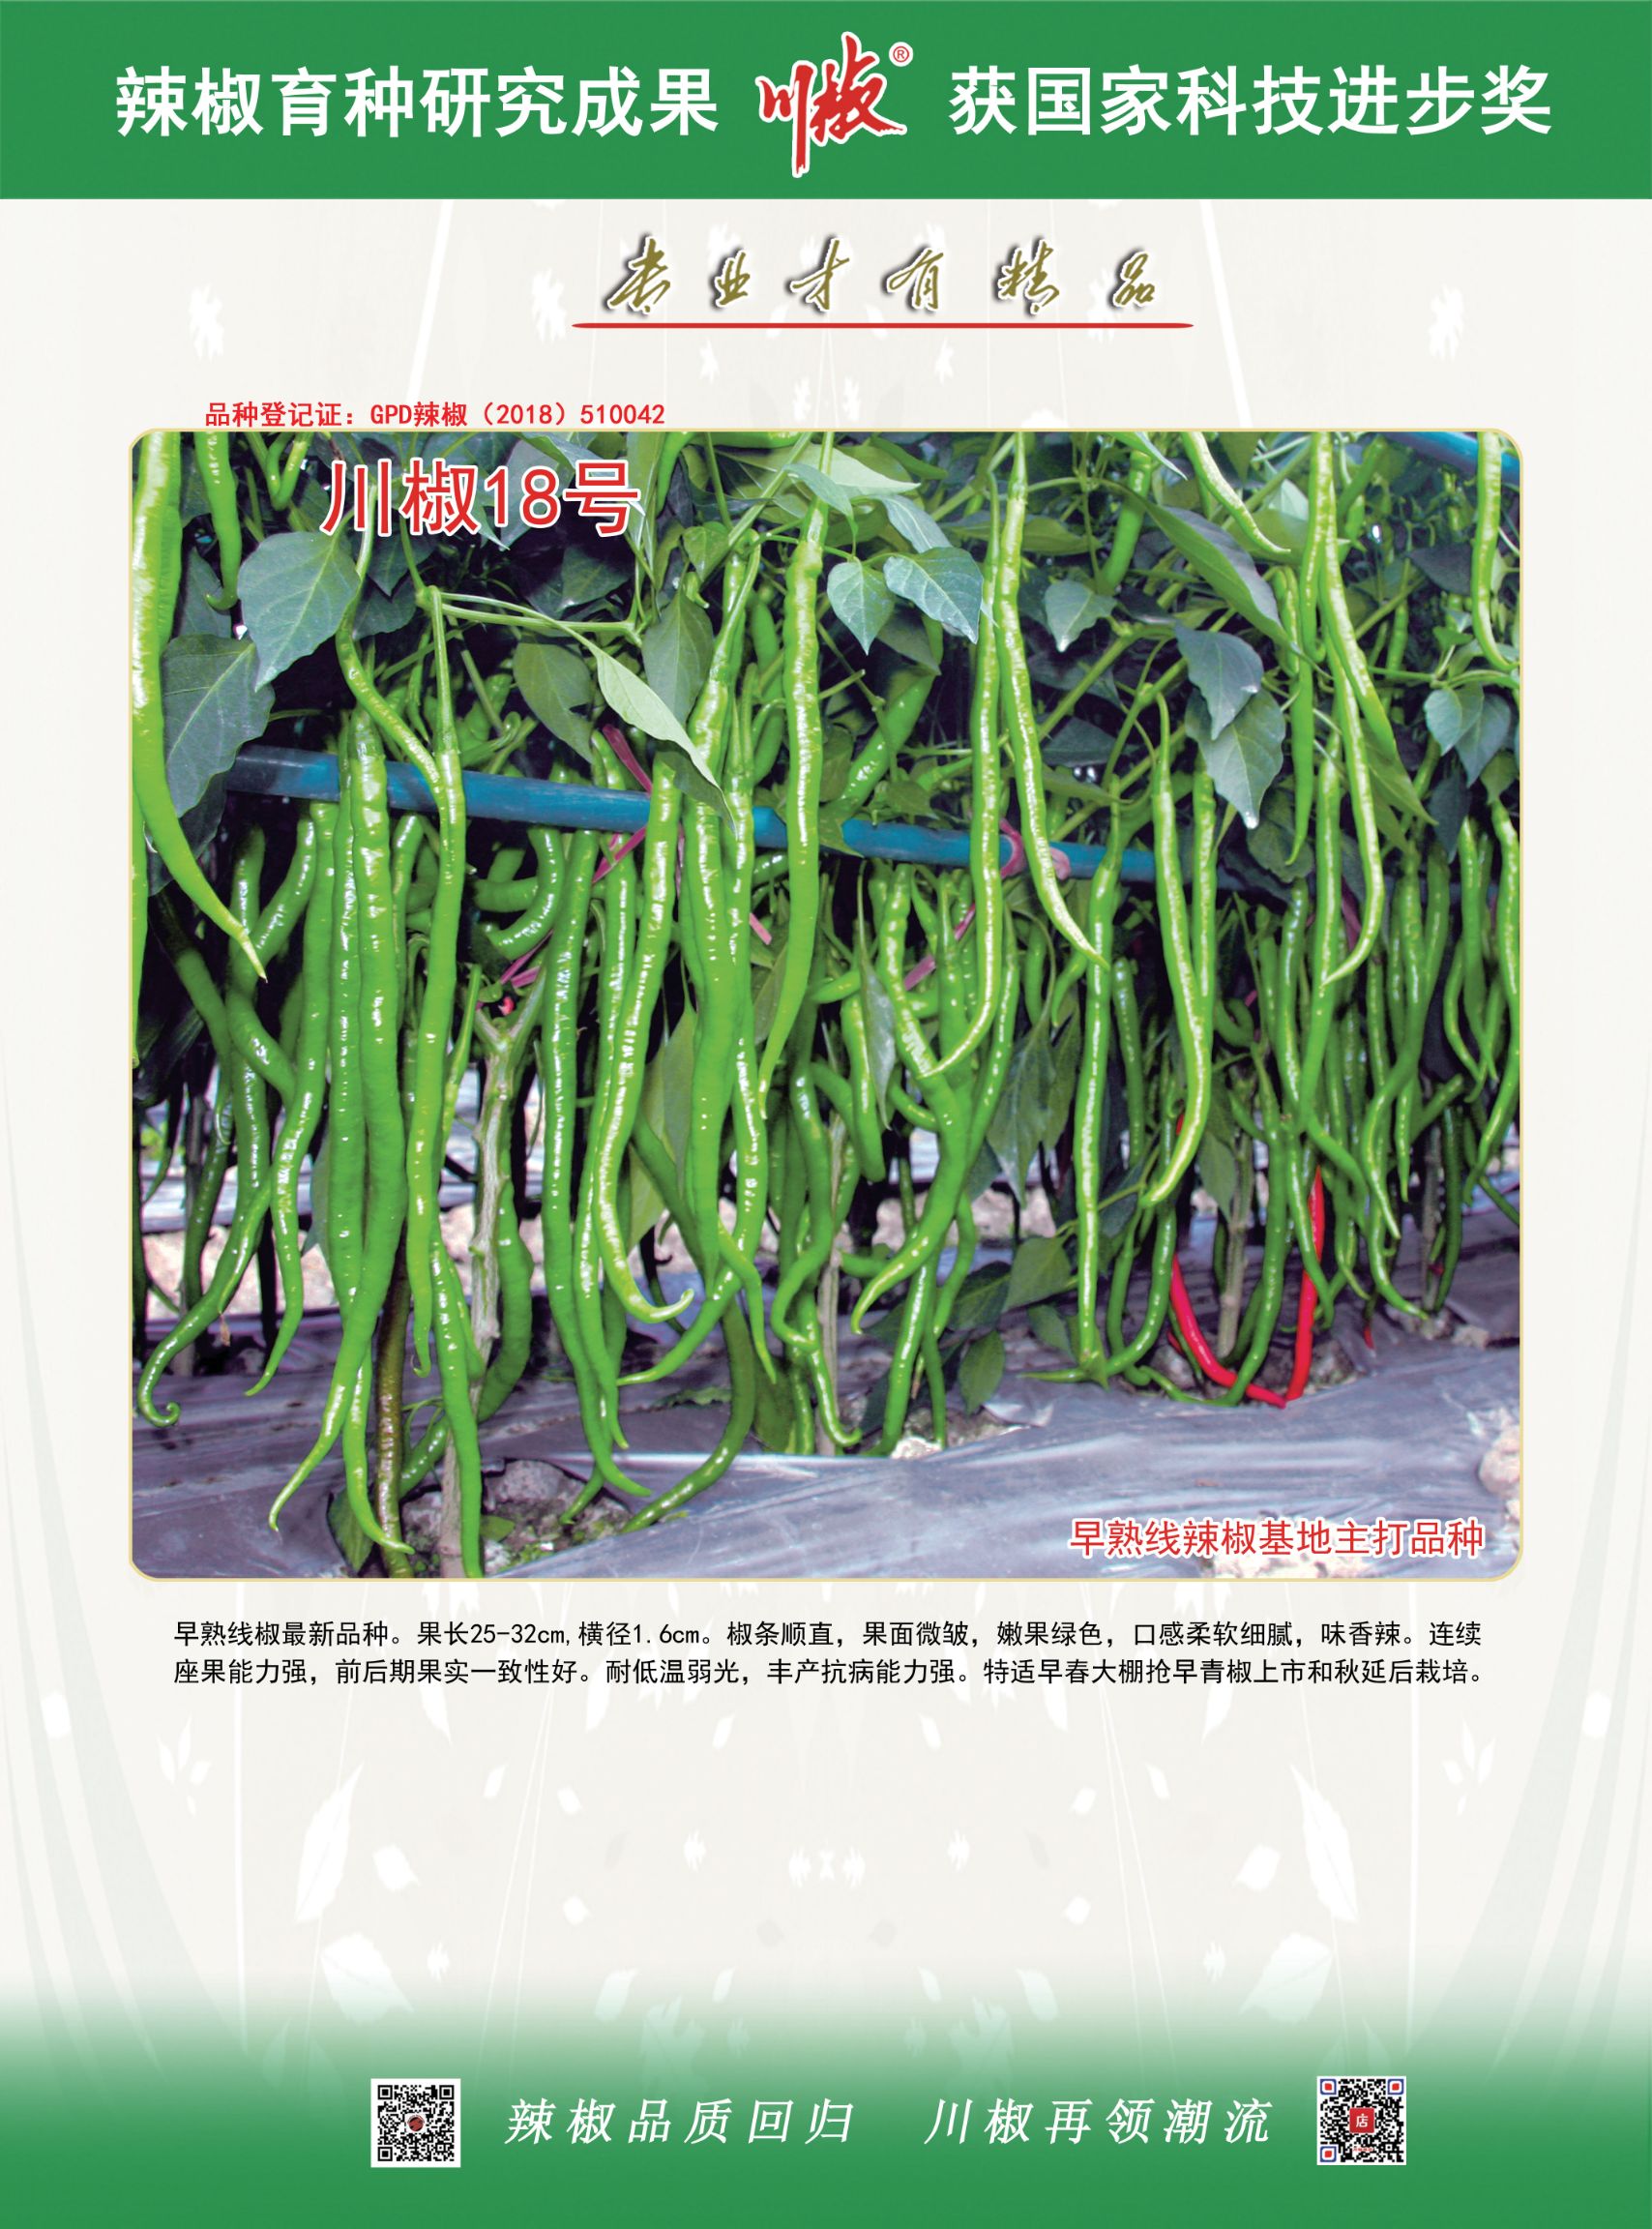 川优18号辣椒种子早熟细线椒嫩果浅绿色西南地区畅销品种